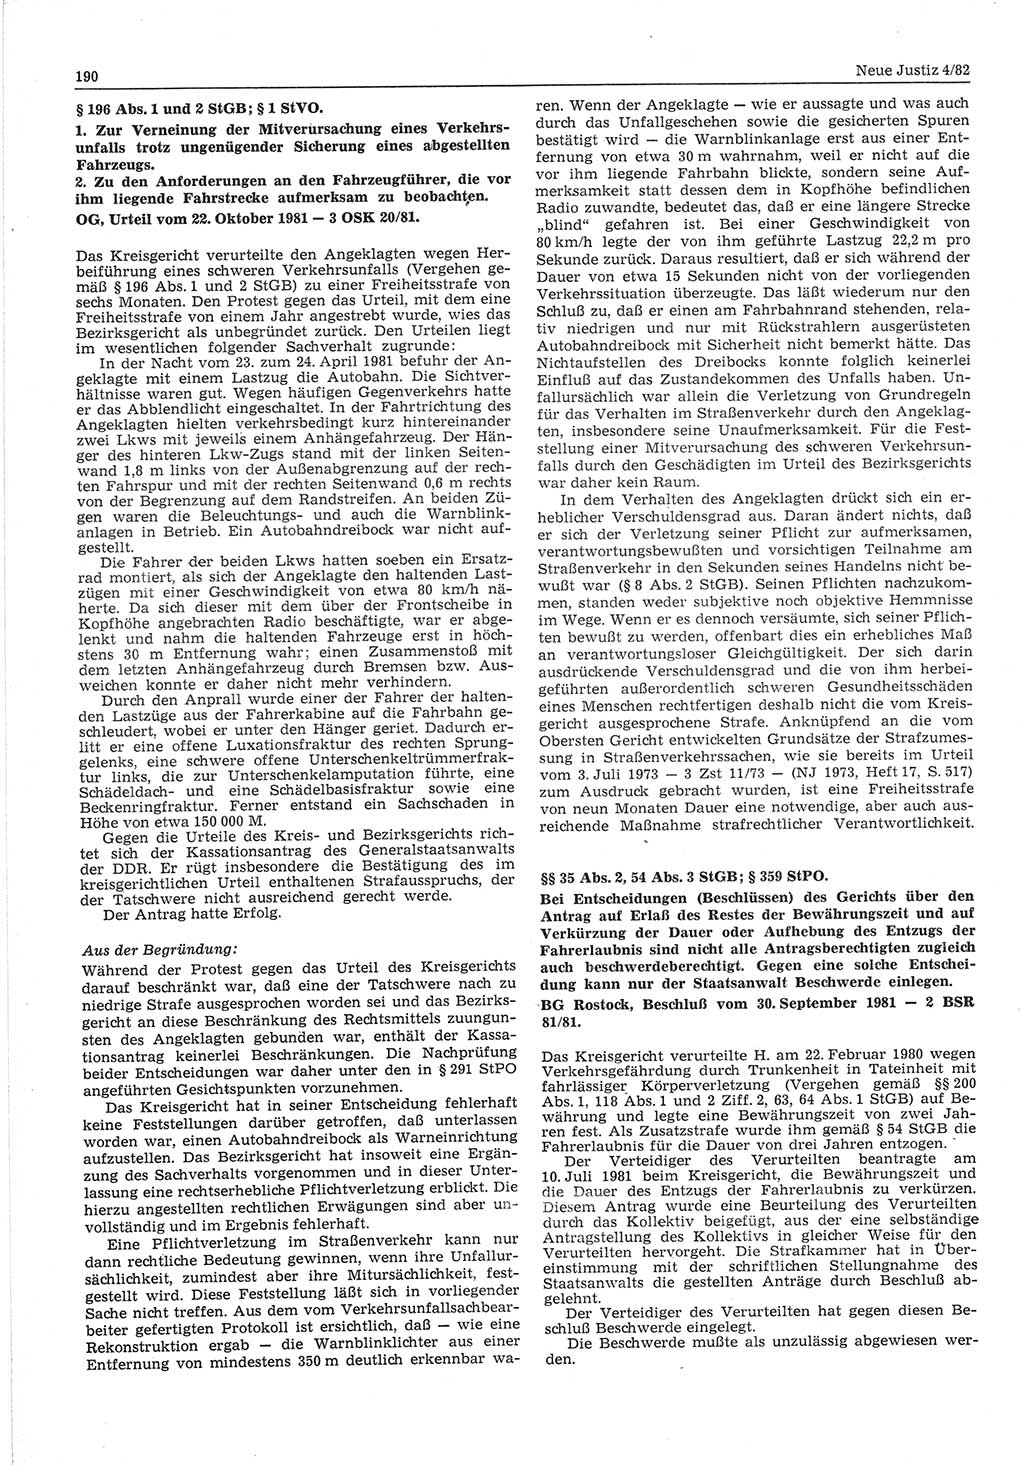 Neue Justiz (NJ), Zeitschrift für sozialistisches Recht und Gesetzlichkeit [Deutsche Demokratische Republik (DDR)], 36. Jahrgang 1982, Seite 190 (NJ DDR 1982, S. 190)